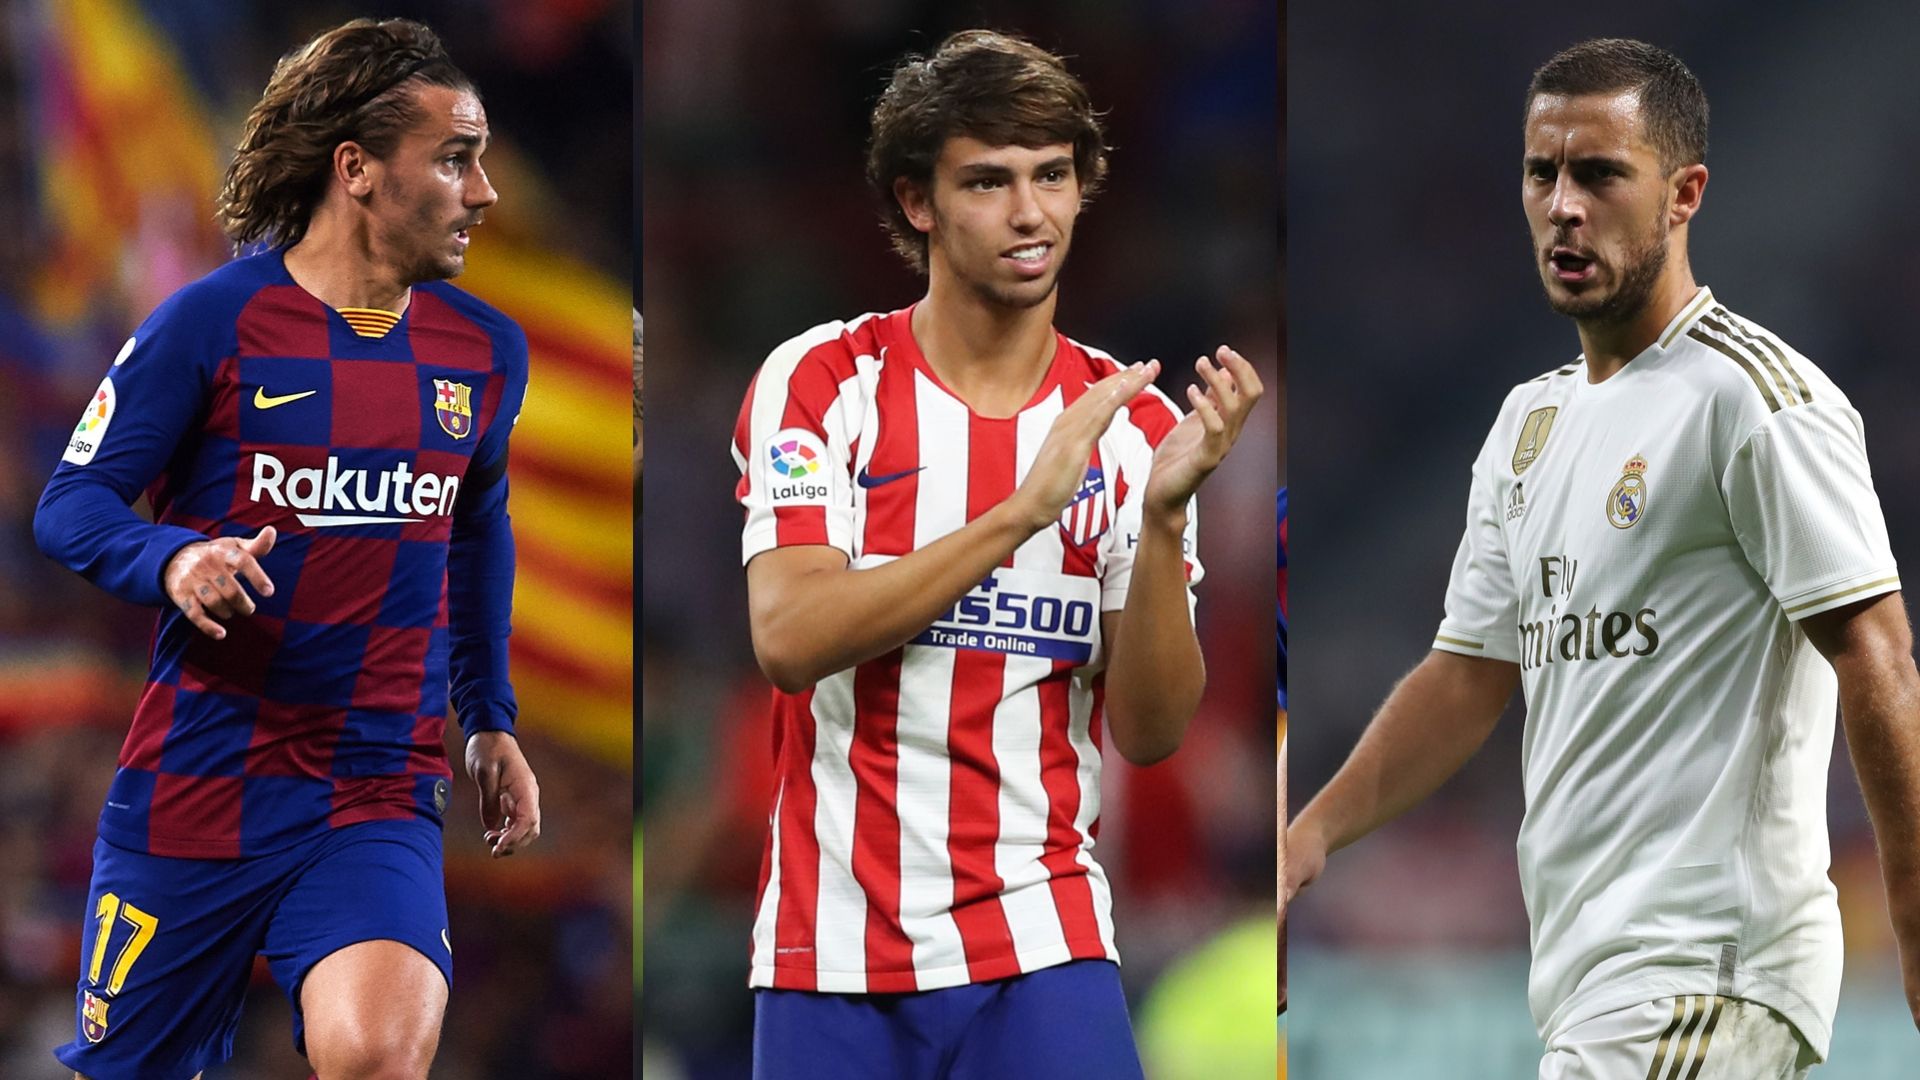 Qui est le meilleur entre Hazard, Joao Felix et Griezmann ? Le verdict des chiffres